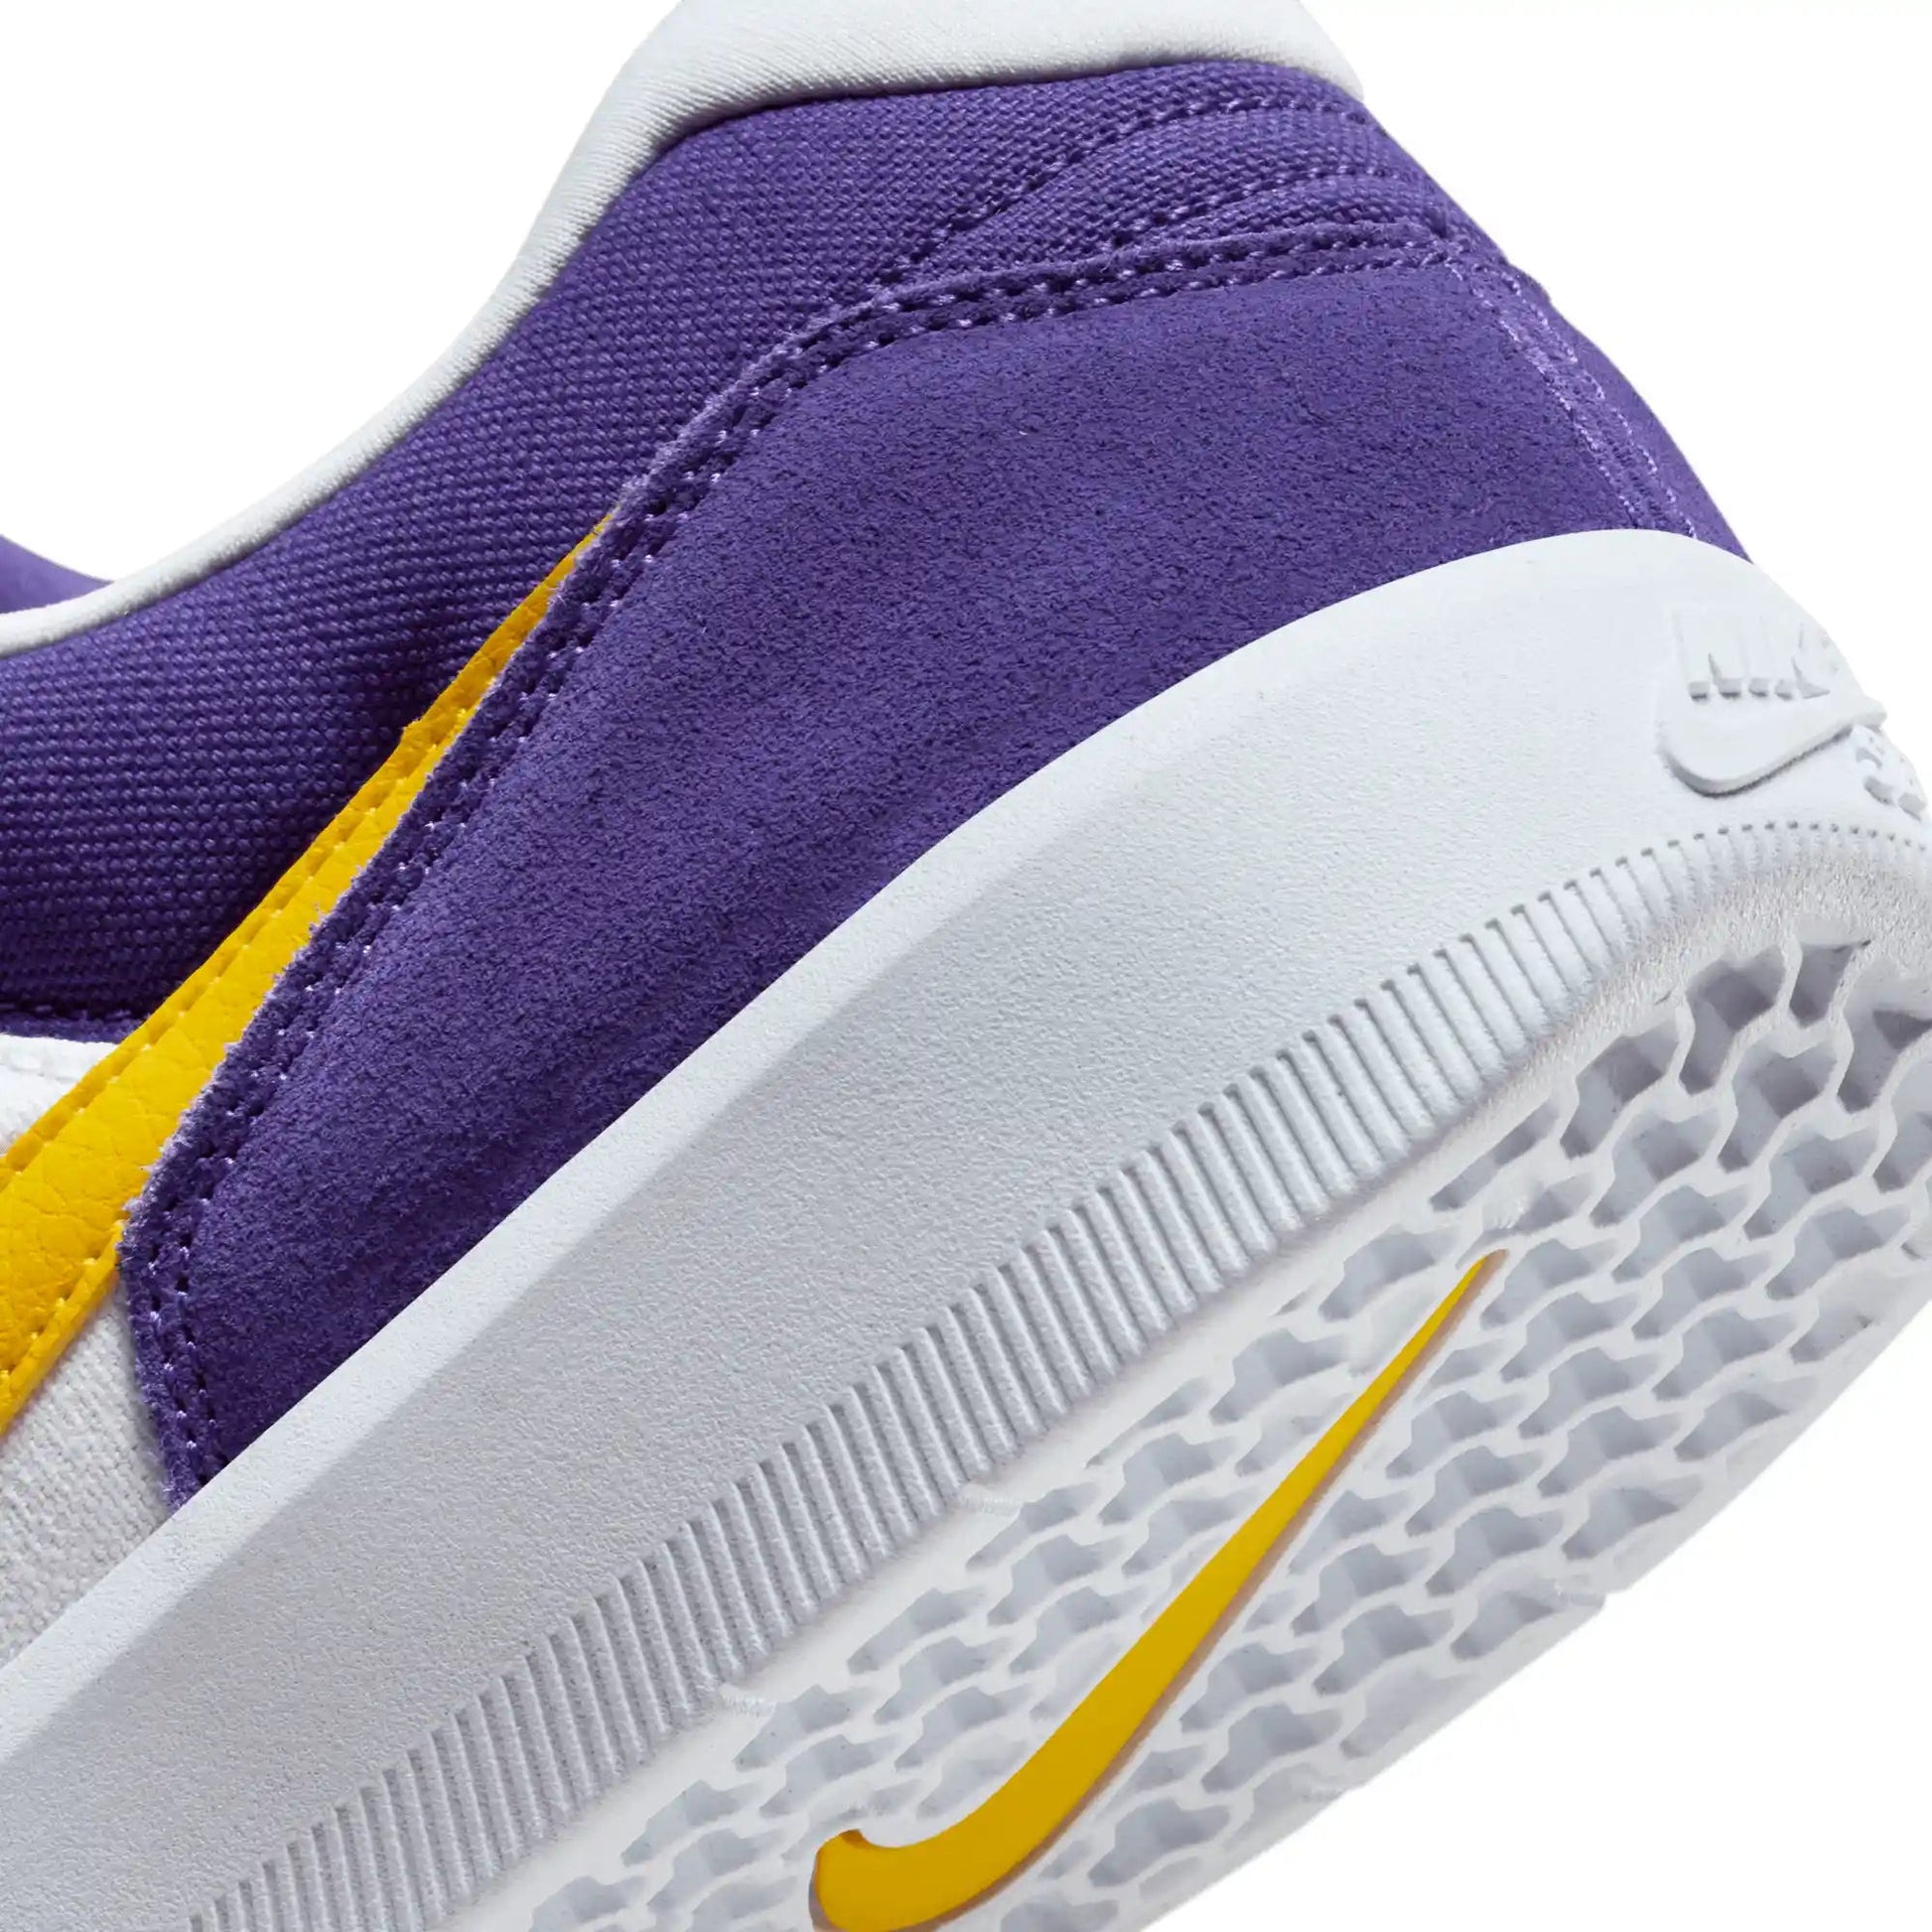 Nike SB Force 58, court purple/amarillo-white-white - Tiki Room Skateboards - 3